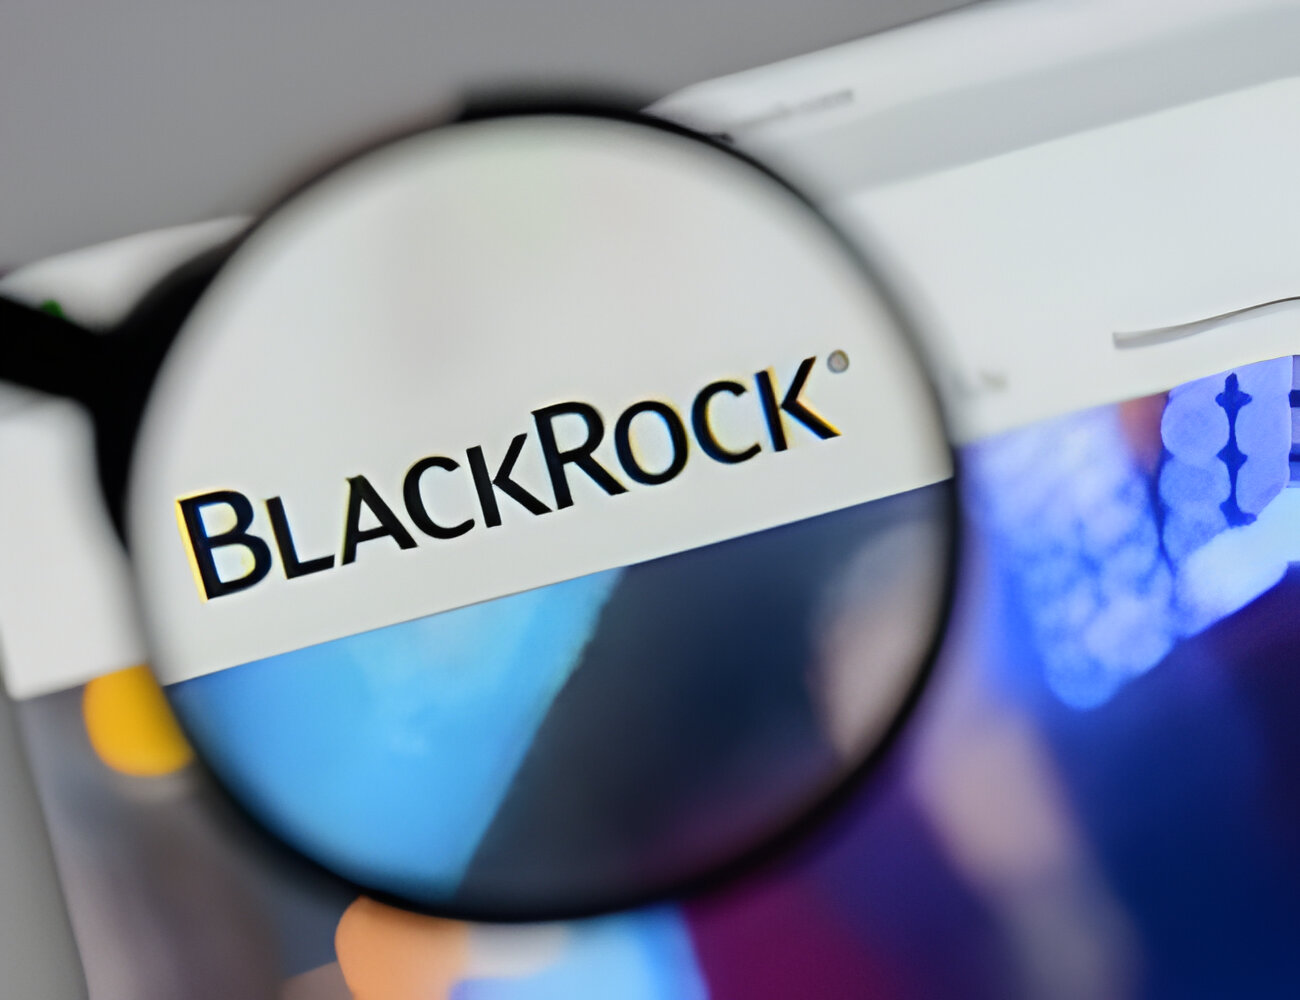 Blackrock menerima setidaknya $40 ribu aset kripto dalam bentuk memecoin setelah melakukan deposit sebesar $100 juta dalam USDC di jaringan Ethereum.